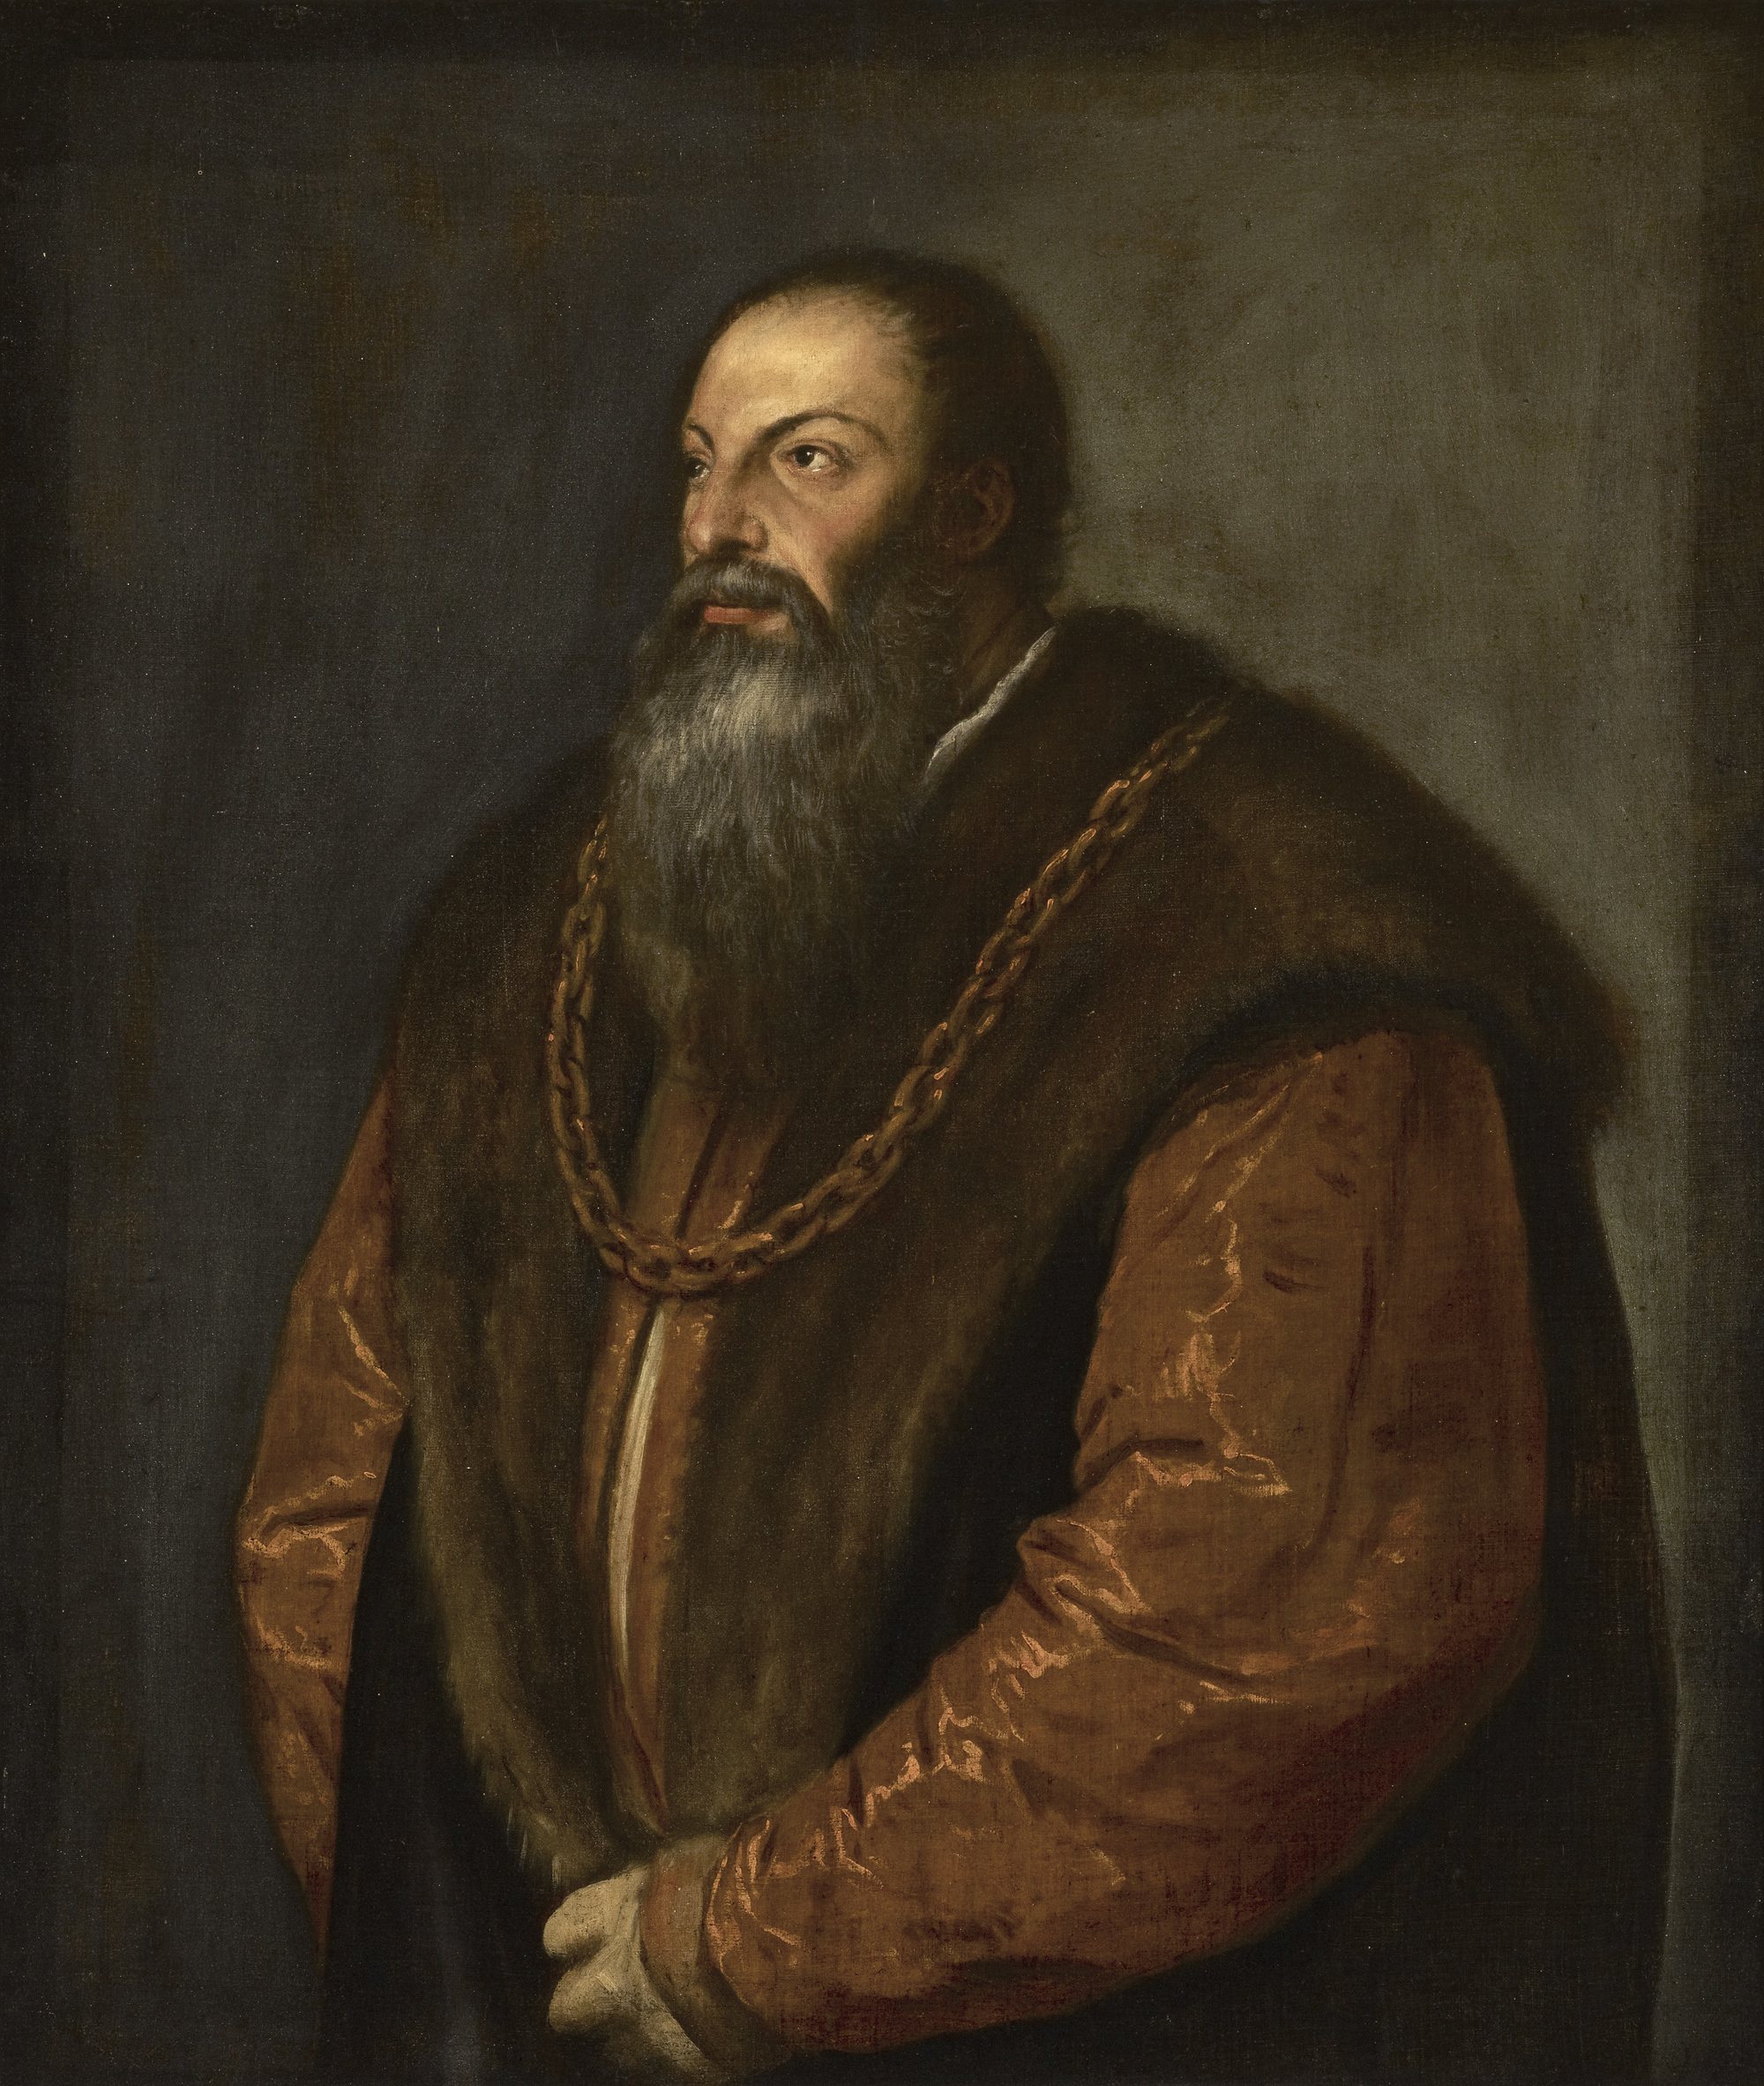 Pietro Aretino by Tiziano Vecellio - ca. 1537 - 101.9 × 85.7 cm 